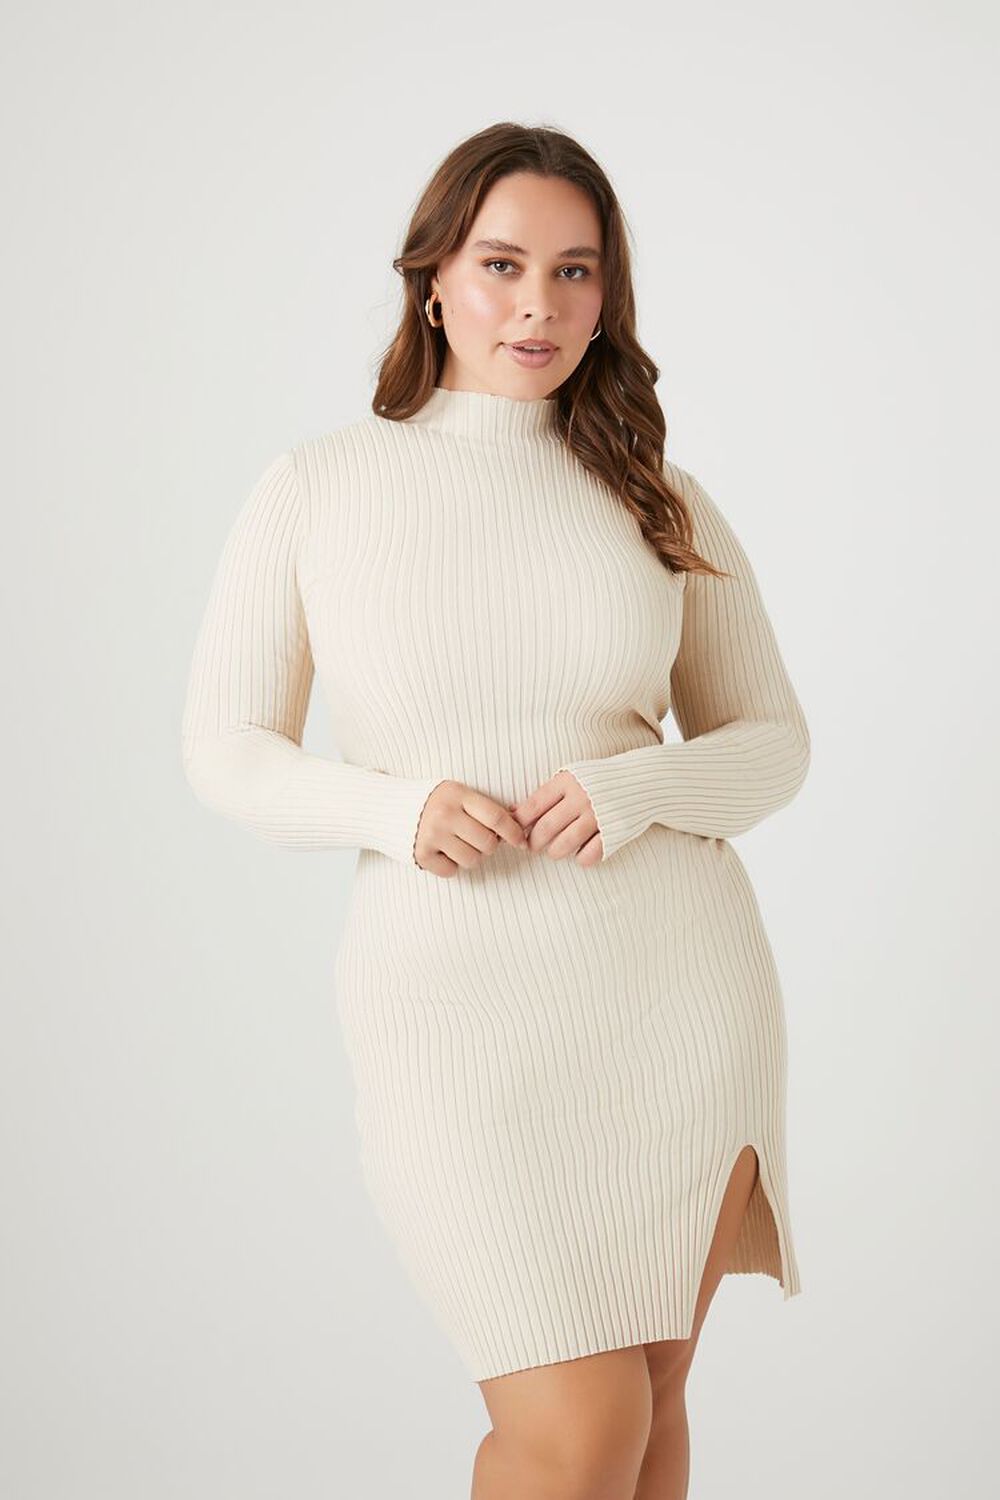 BIRCH Plus Size Bodycon Sweater Dress, image 2